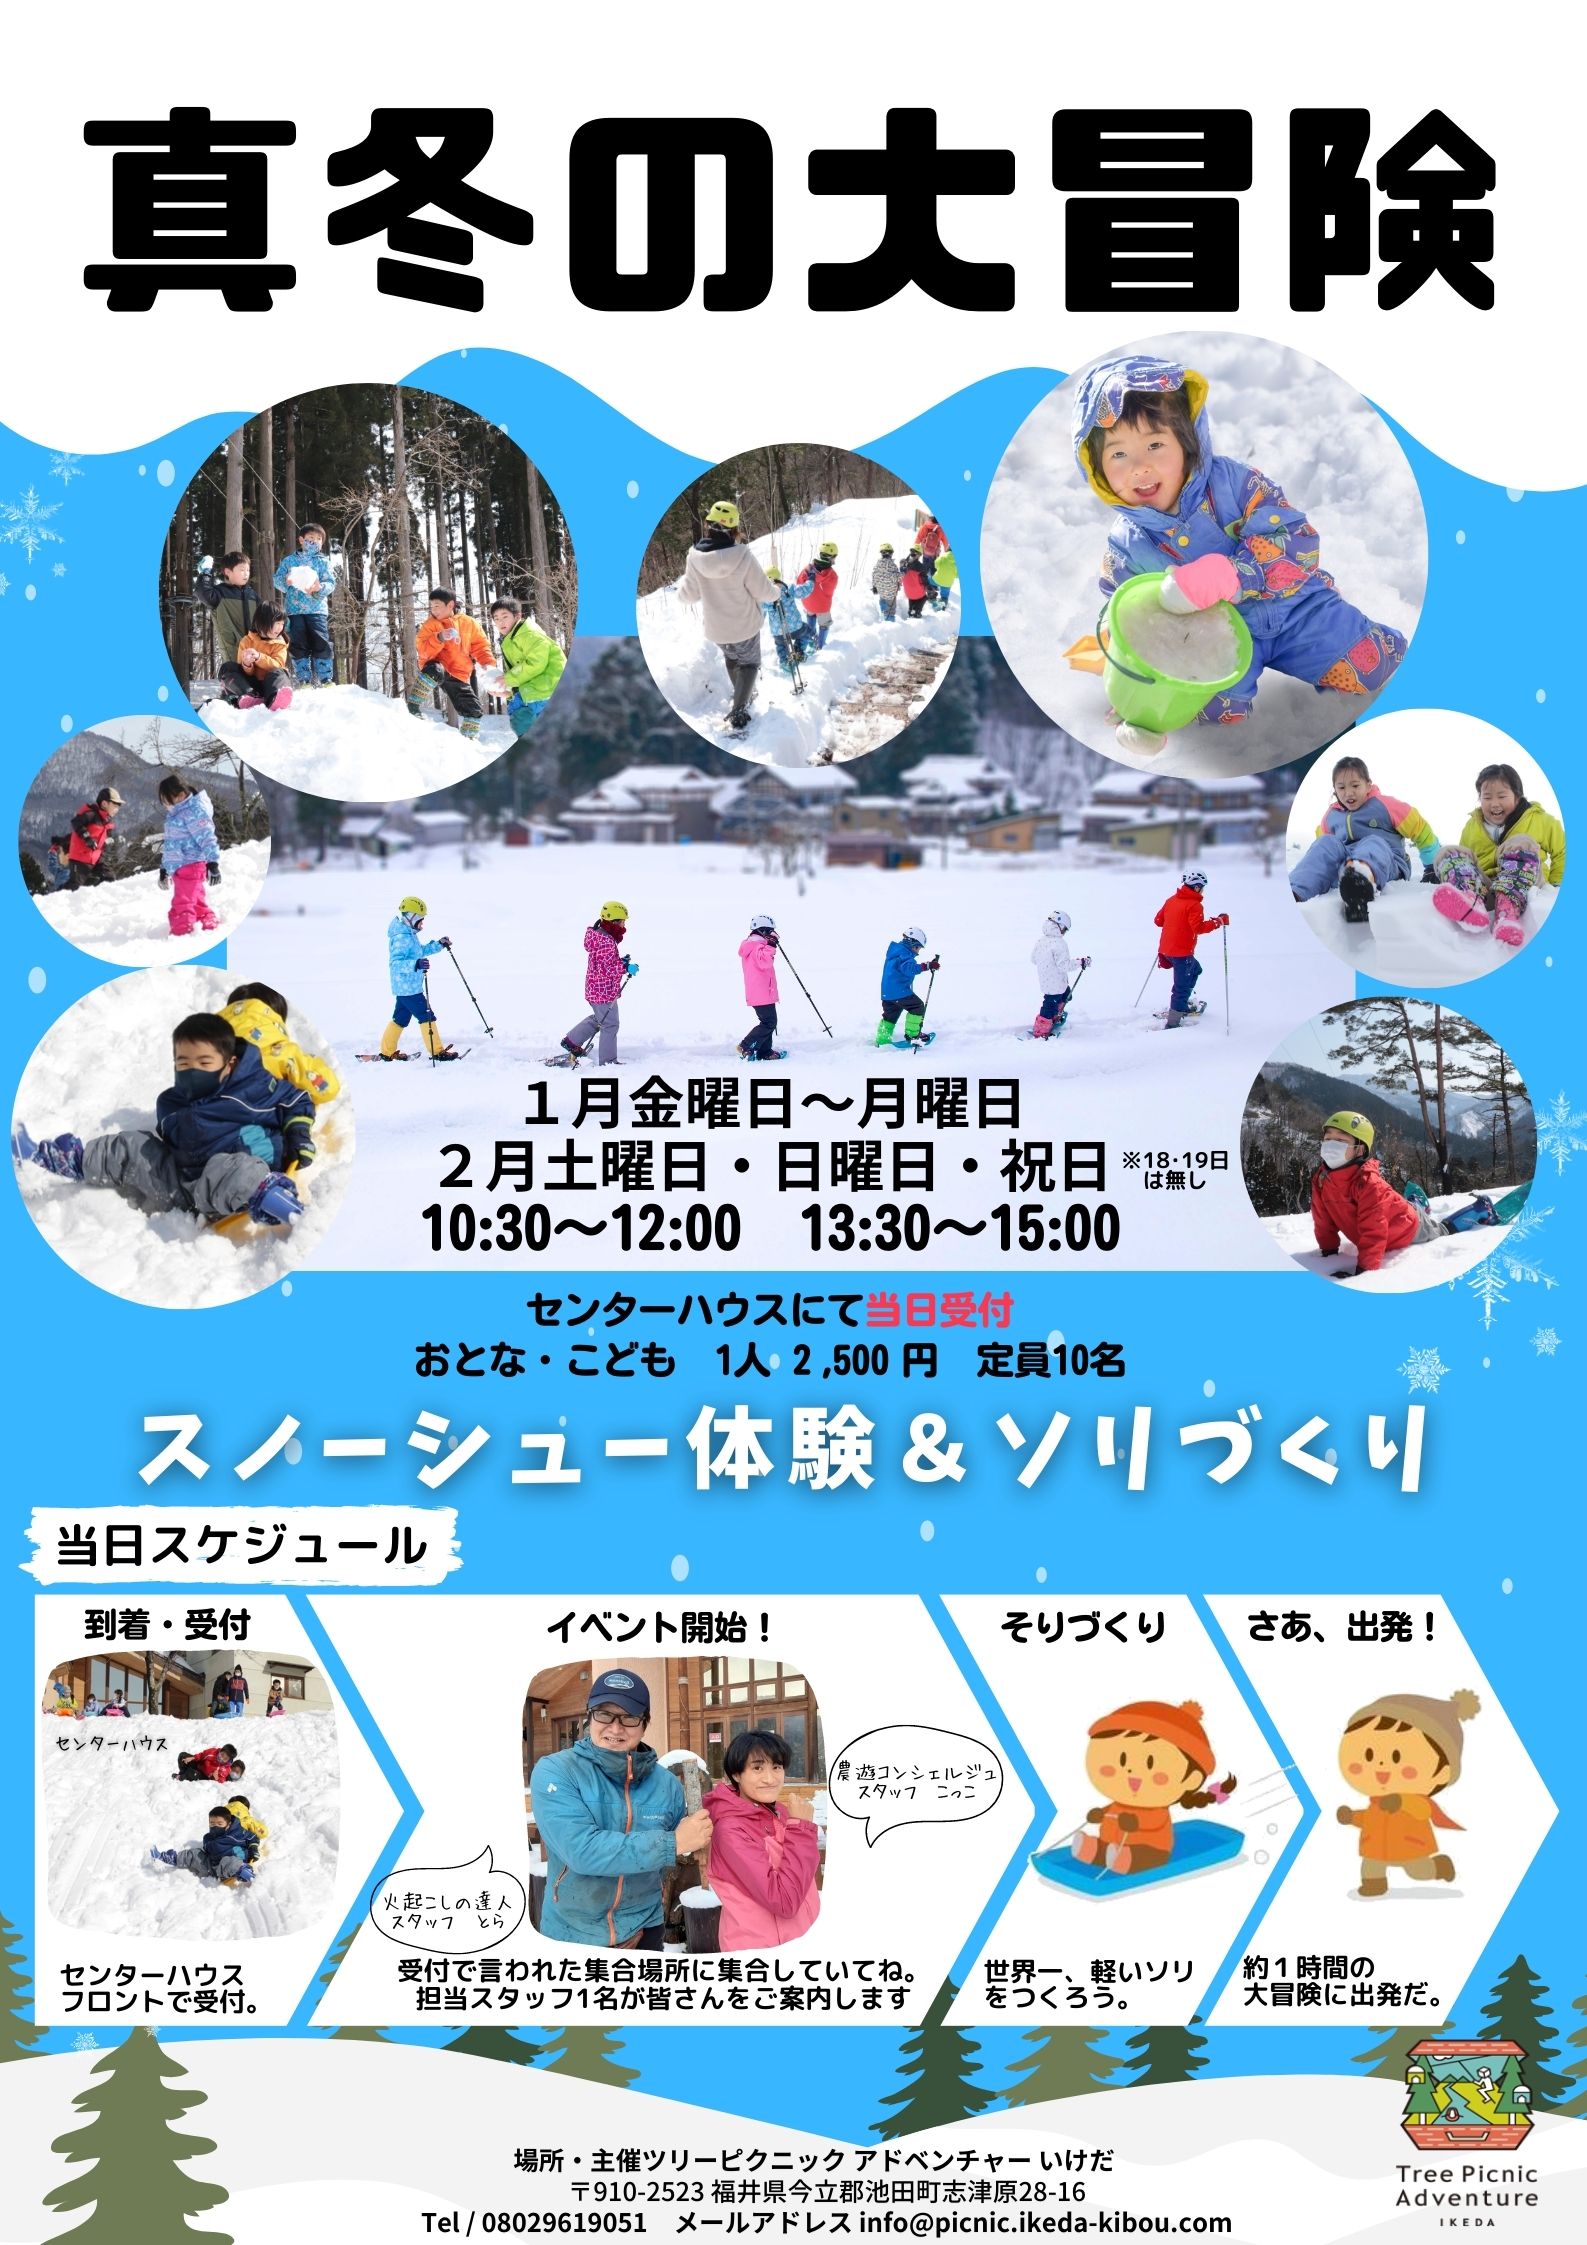 真冬の大冒険 ｜福井の旬な街ネタ&情報ポータル イベント ふーぽ